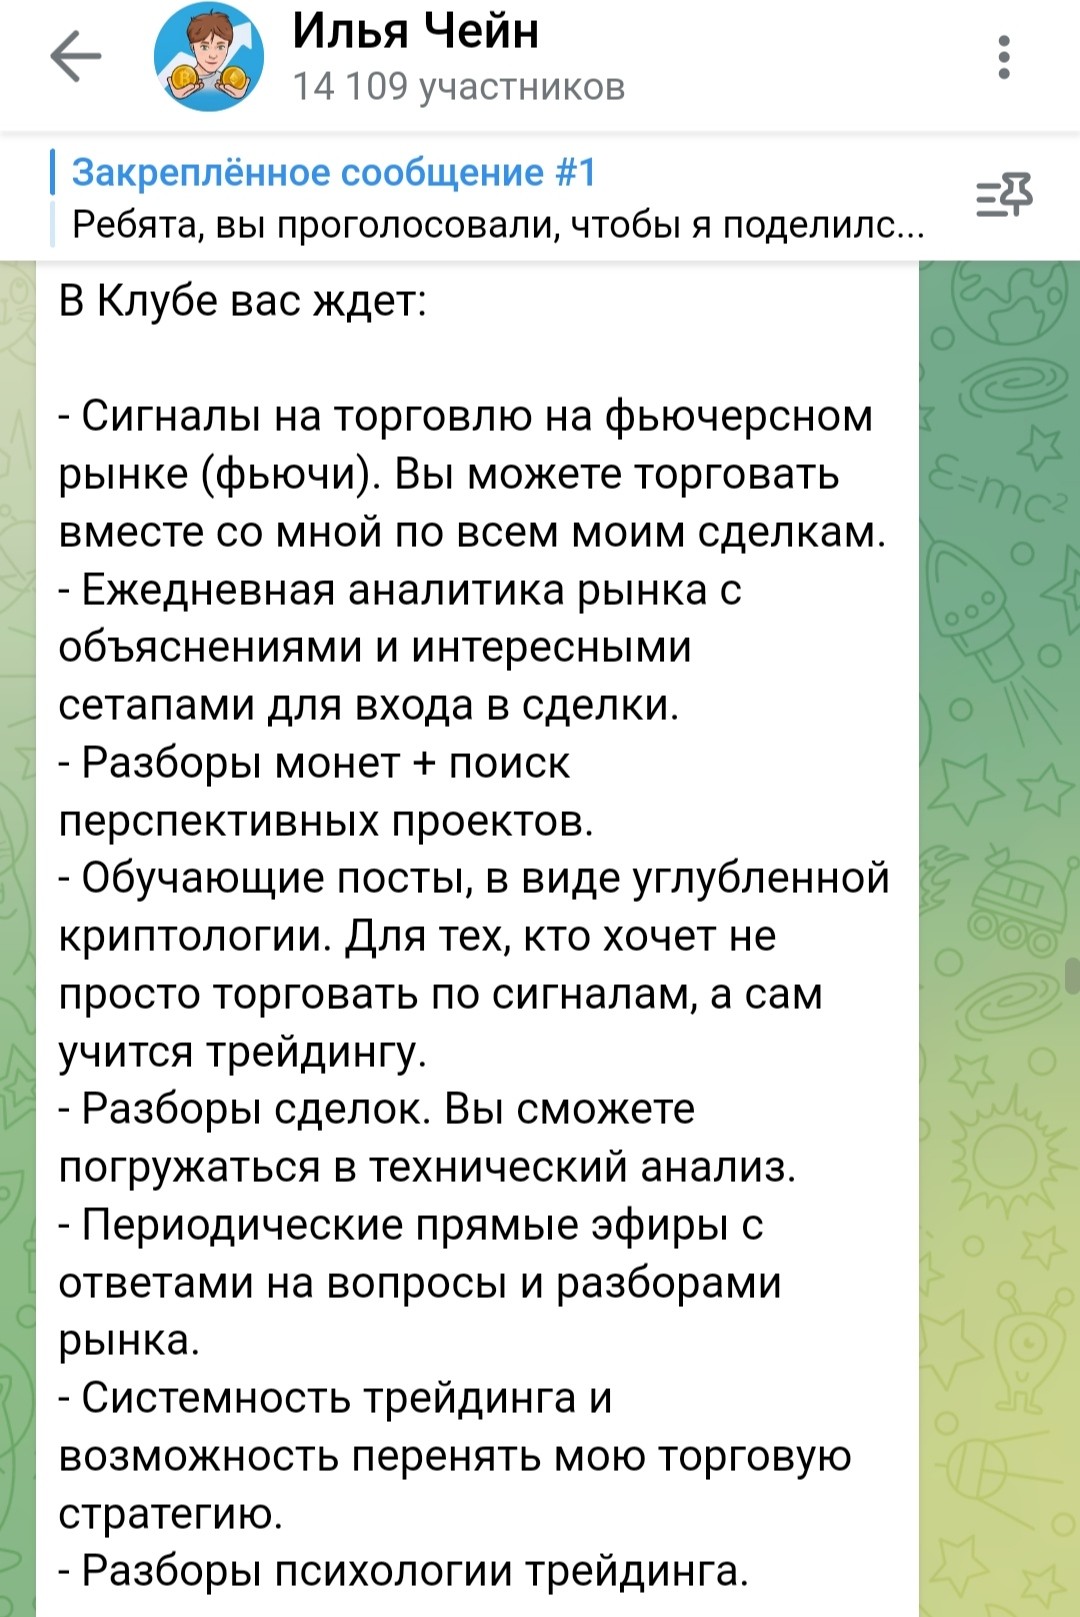 Илья Чейн телеграм Iliyachain